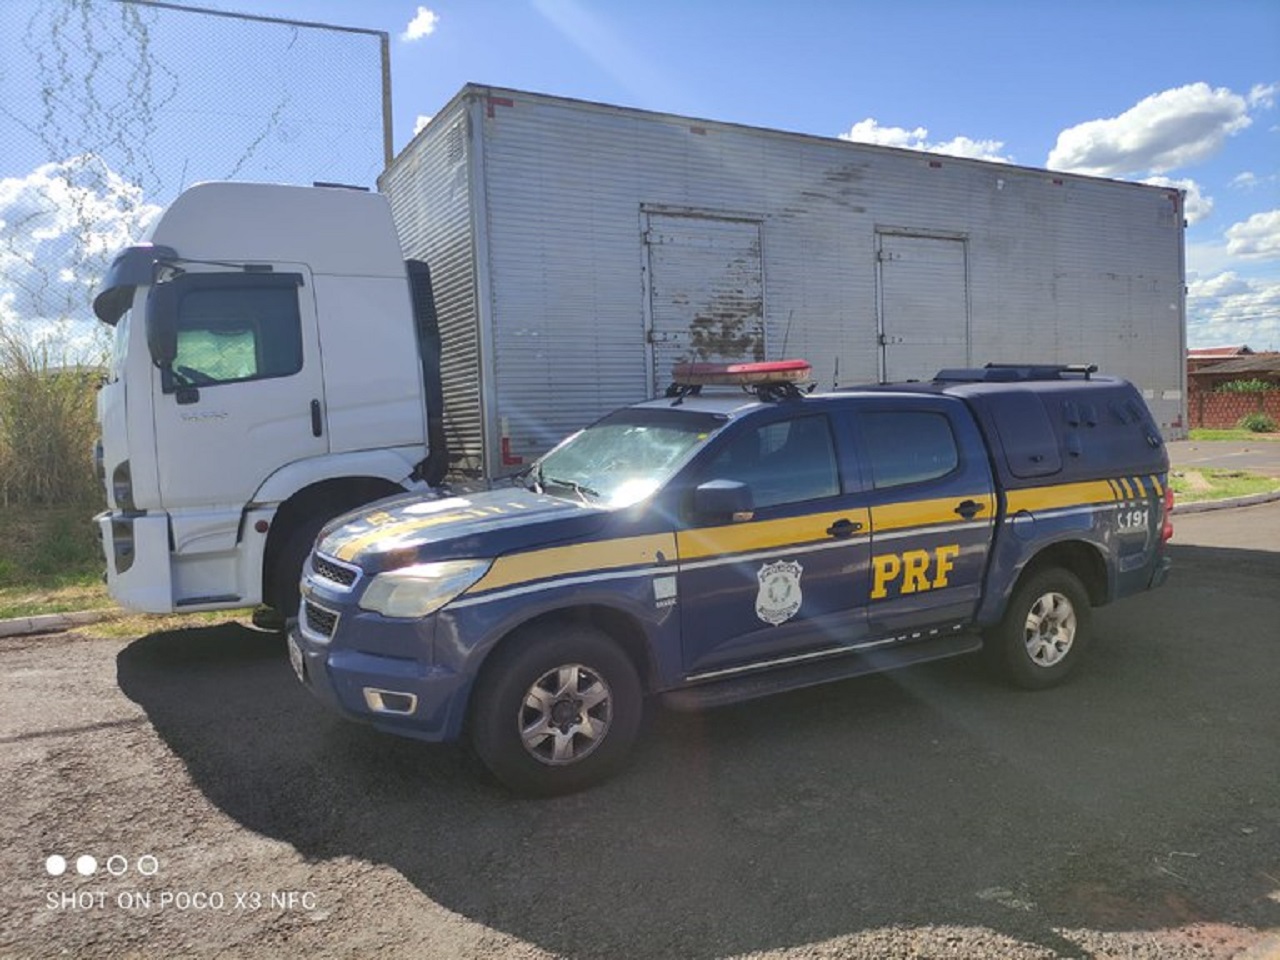 Caminhão roubado é recuperado pela PRF e condutor é preso por receptação